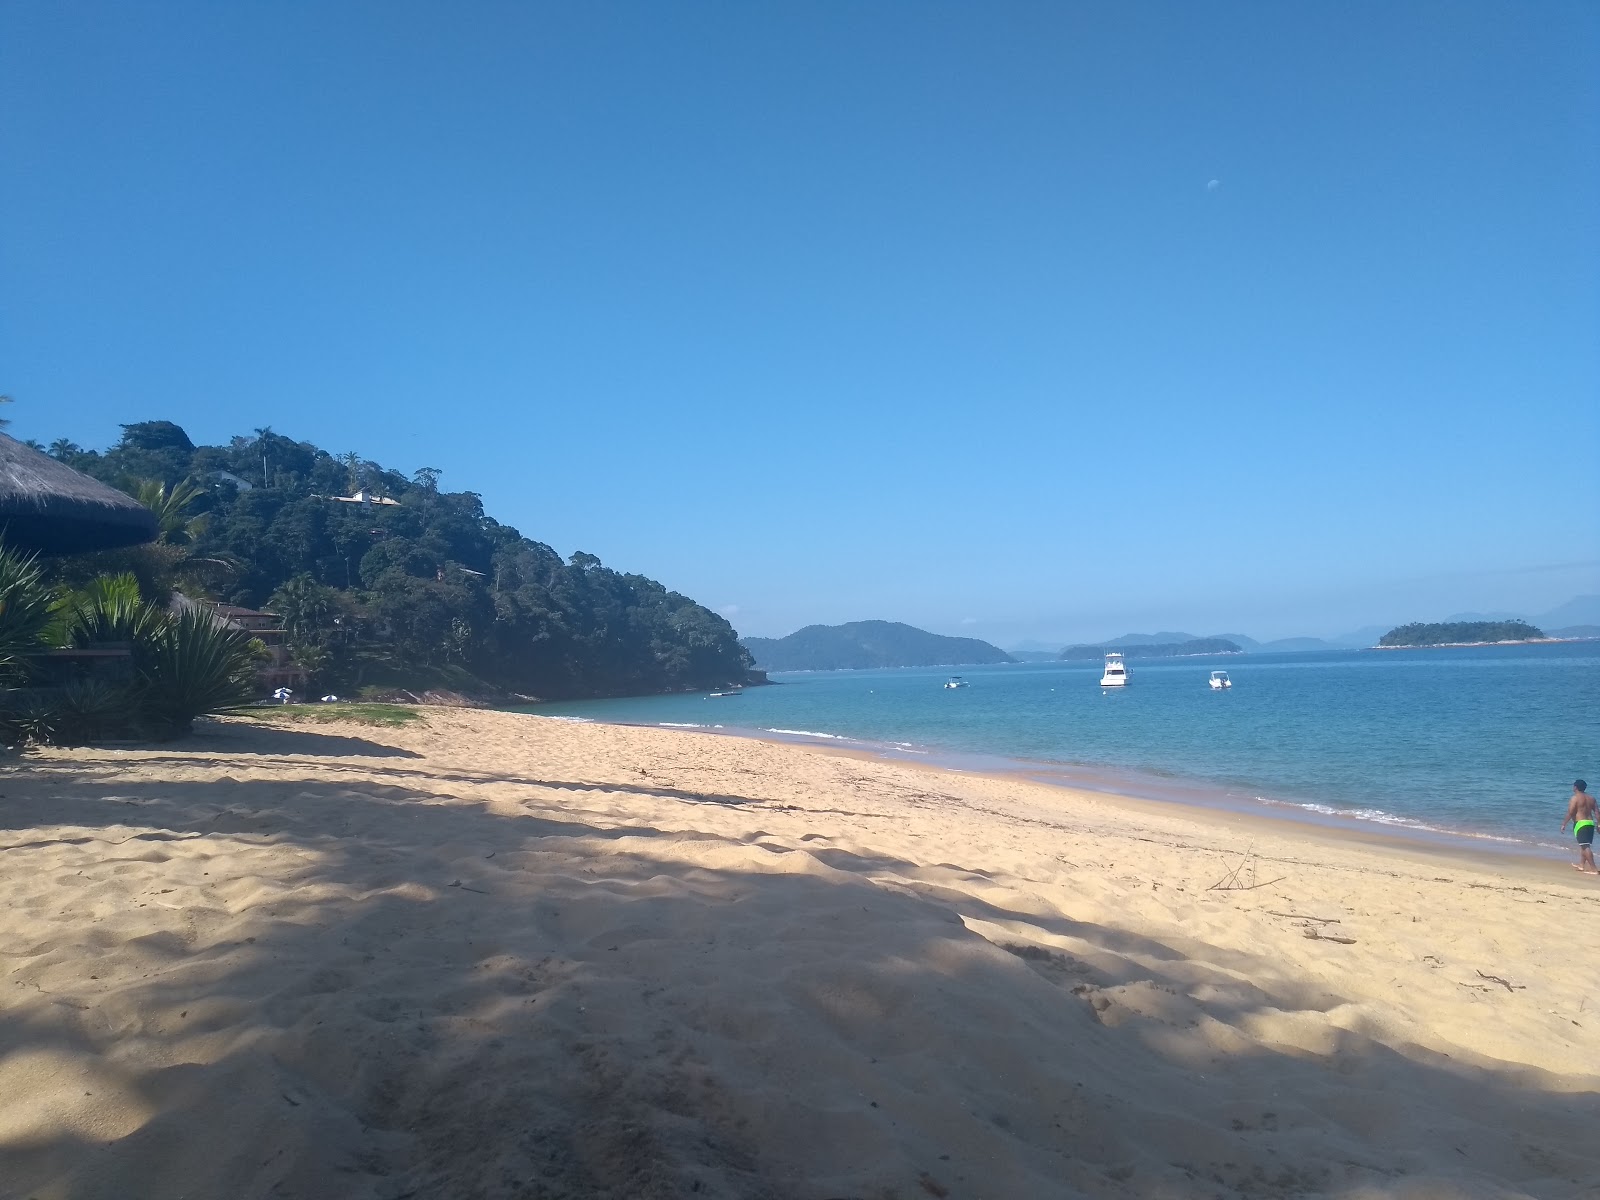 Fotografie cu Plaja Vermelha - locul popular printre cunoscătorii de relaxare